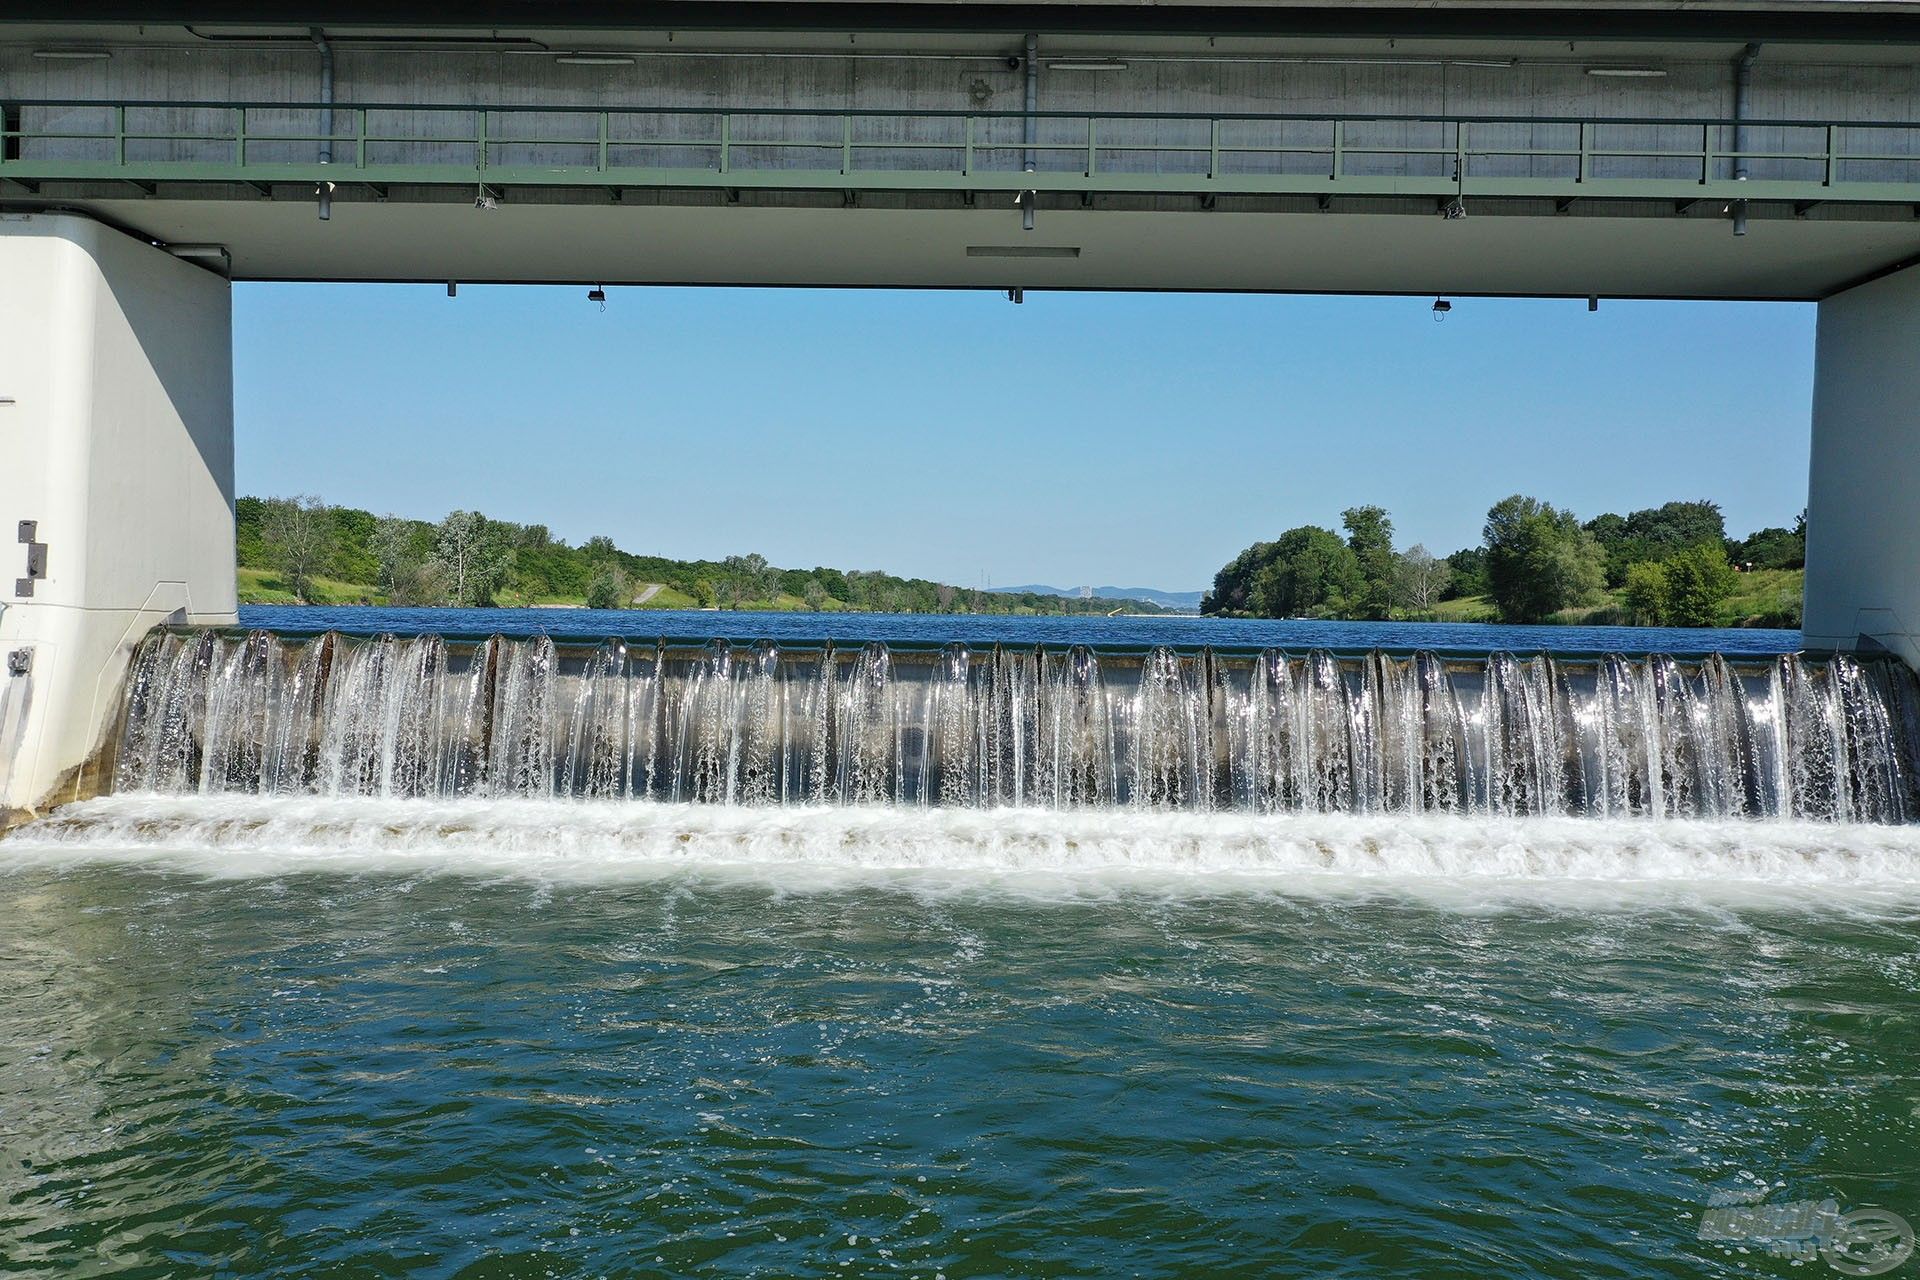 A Duna magas vízállása miatt szinte folyamatosan zúdult át a víz a zsilipeken